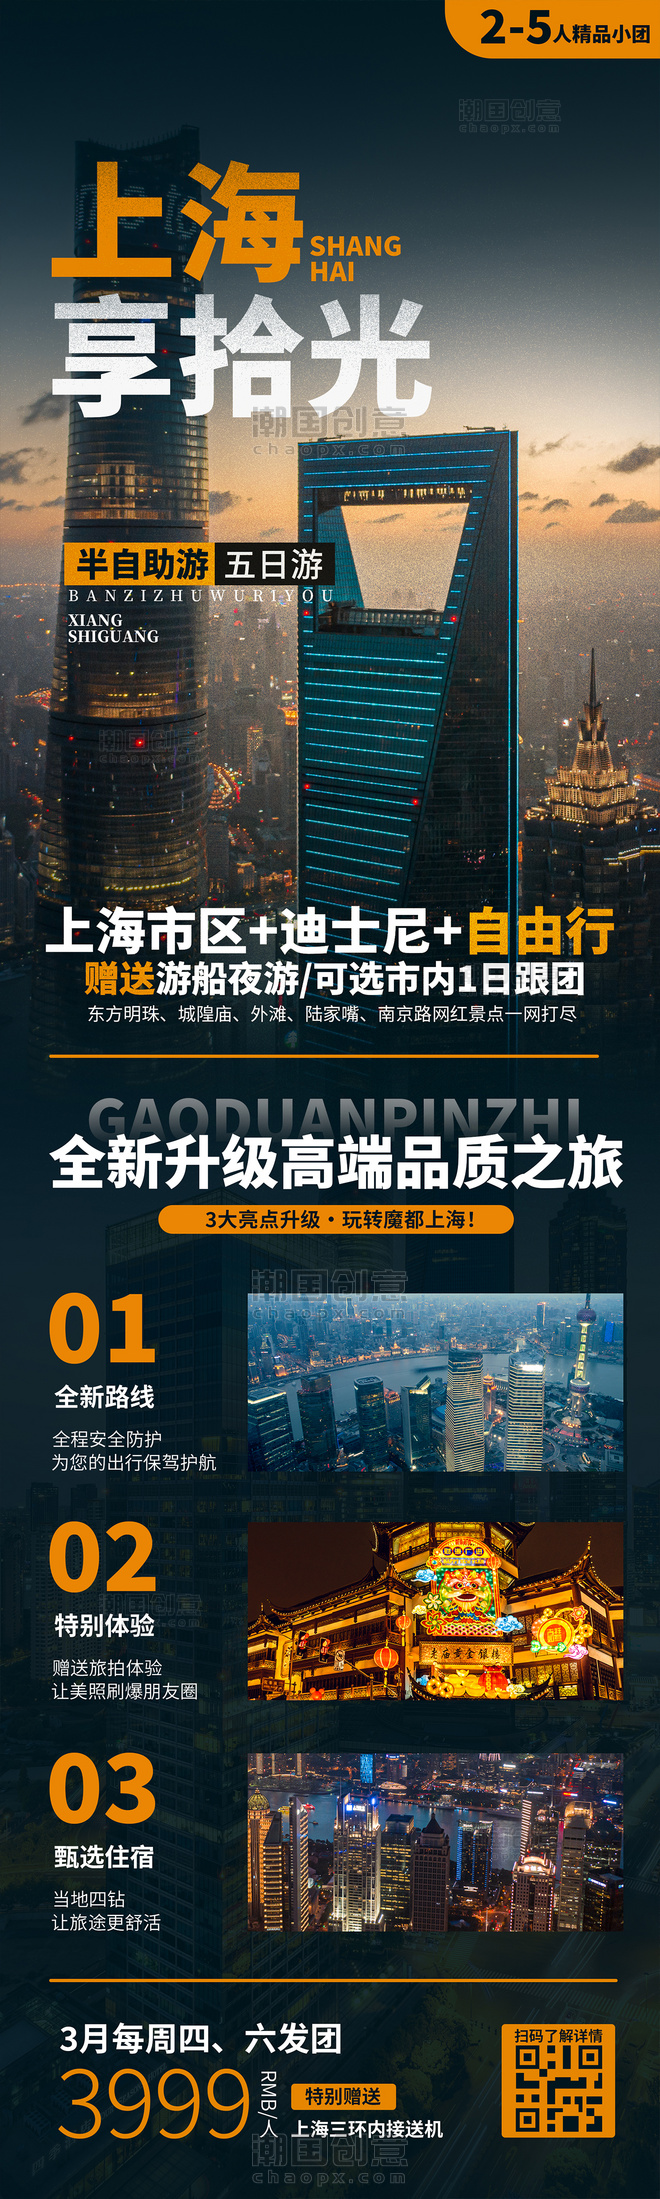 上海拾光旅游旅行旅游度假城市攻略电商活动页营销长图设计